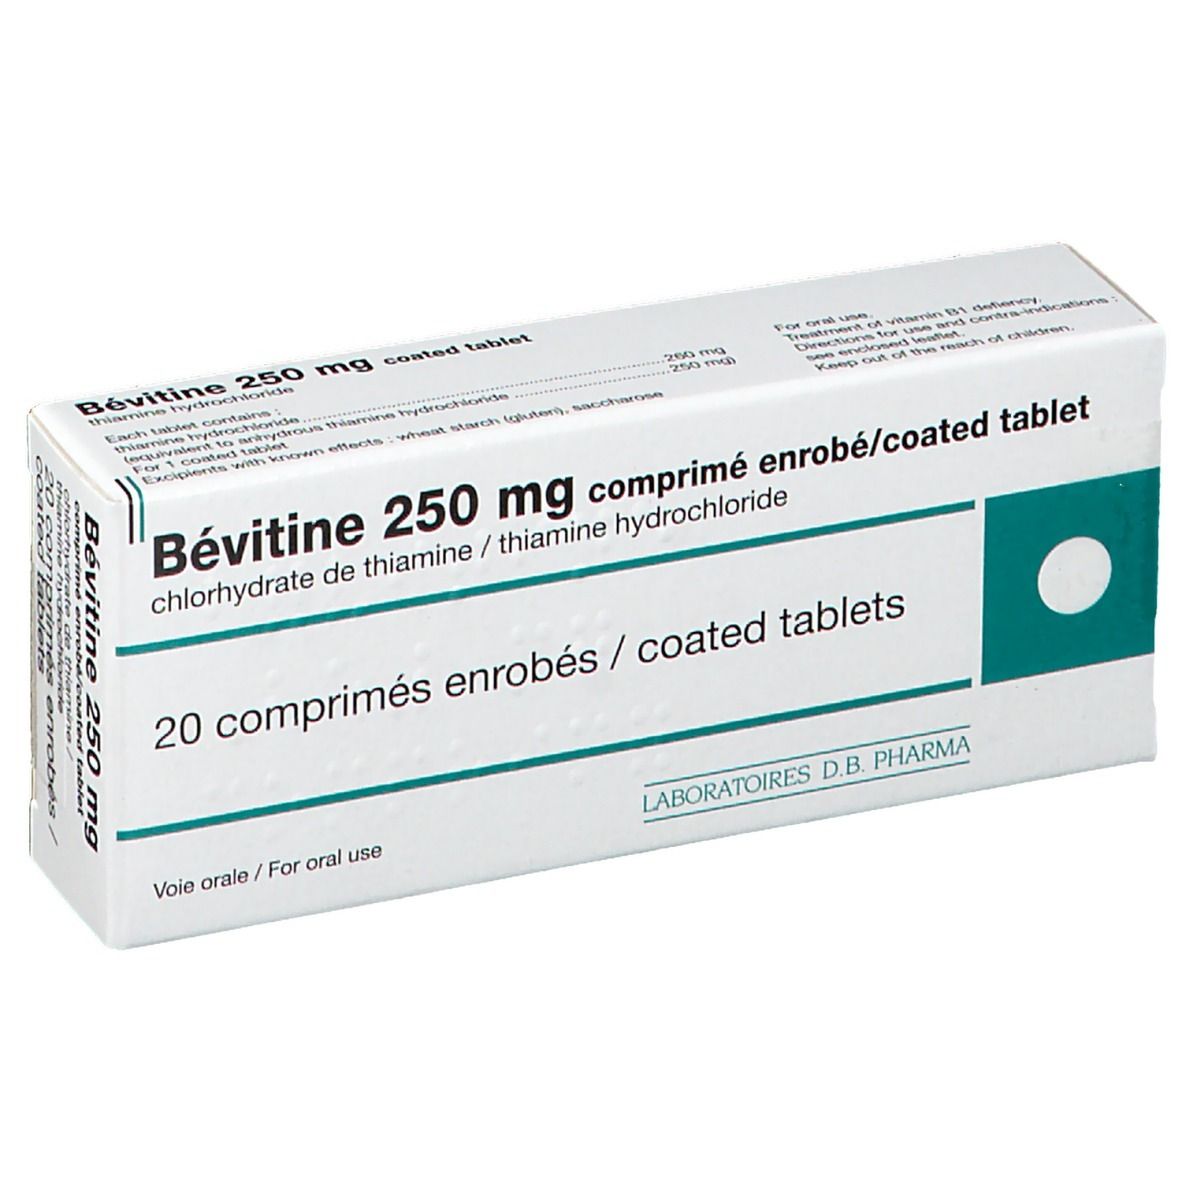 Bévitine 250 mg